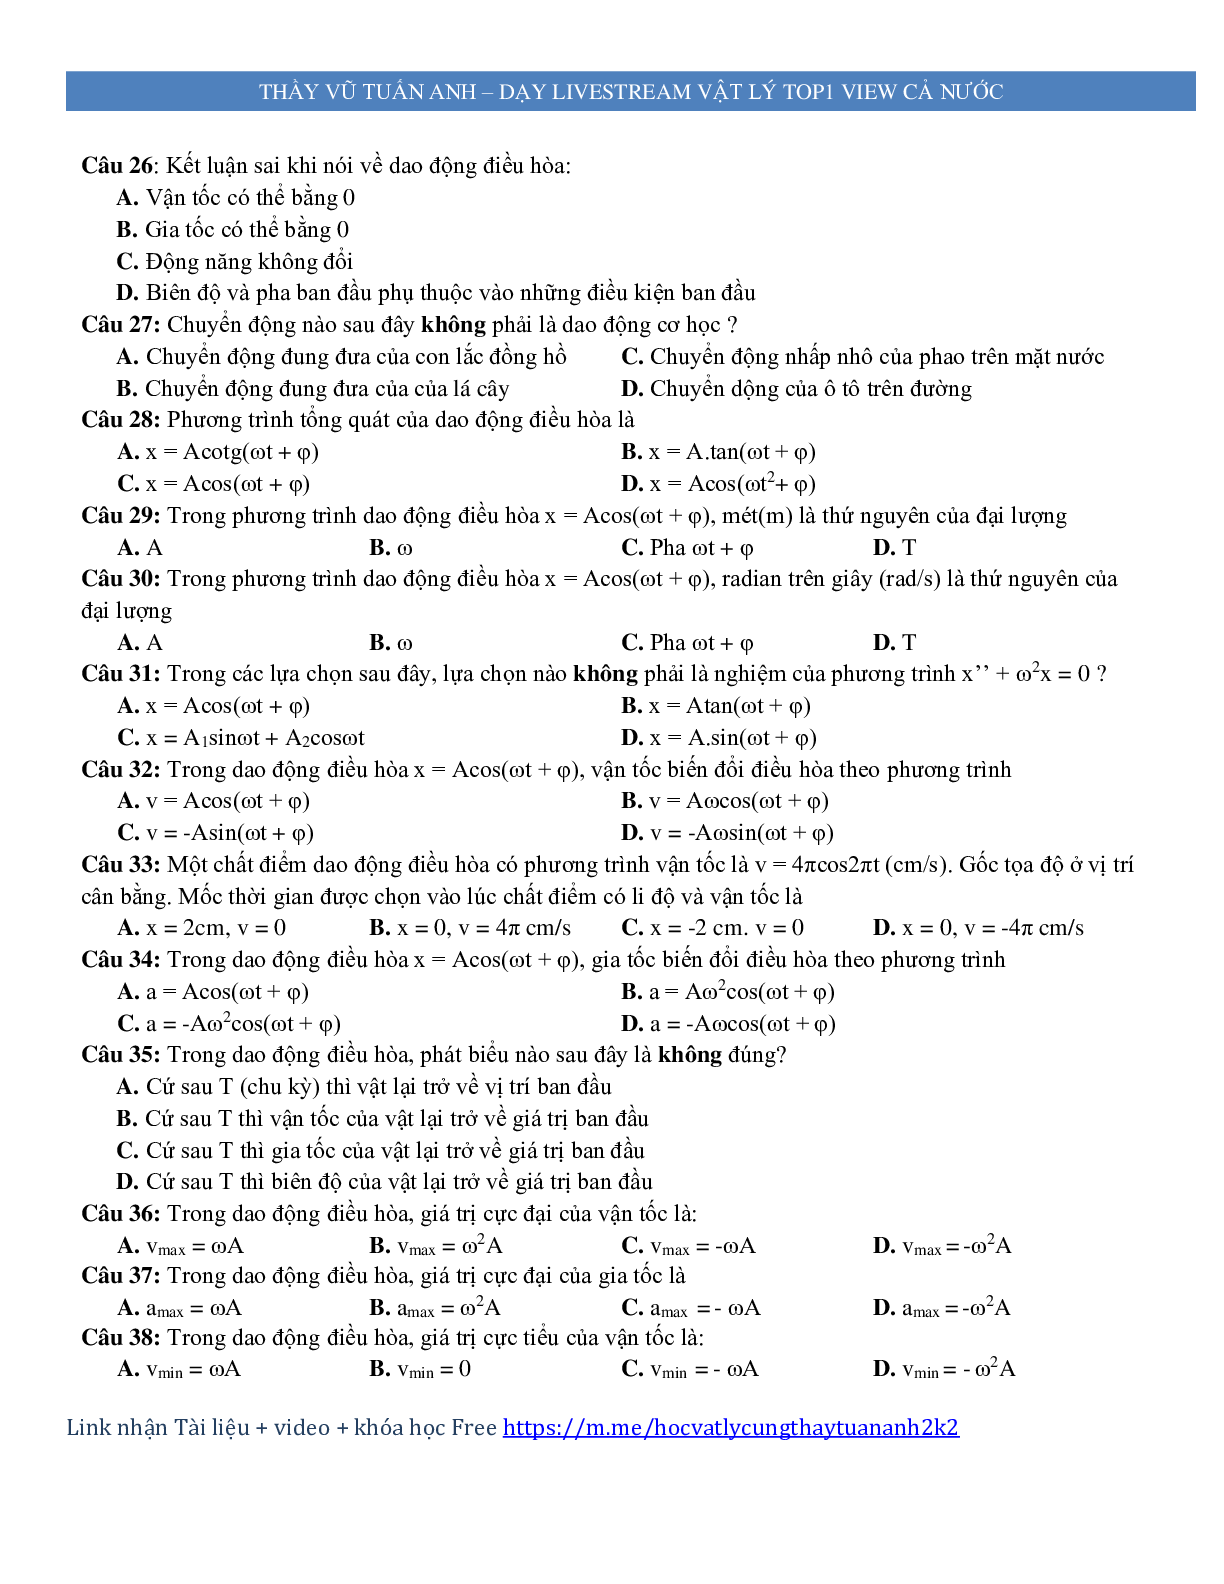 600 câu trắc nghiệm lý thuyết môn Vật lý ôn thi THPT Quốc Gia (trang 5)